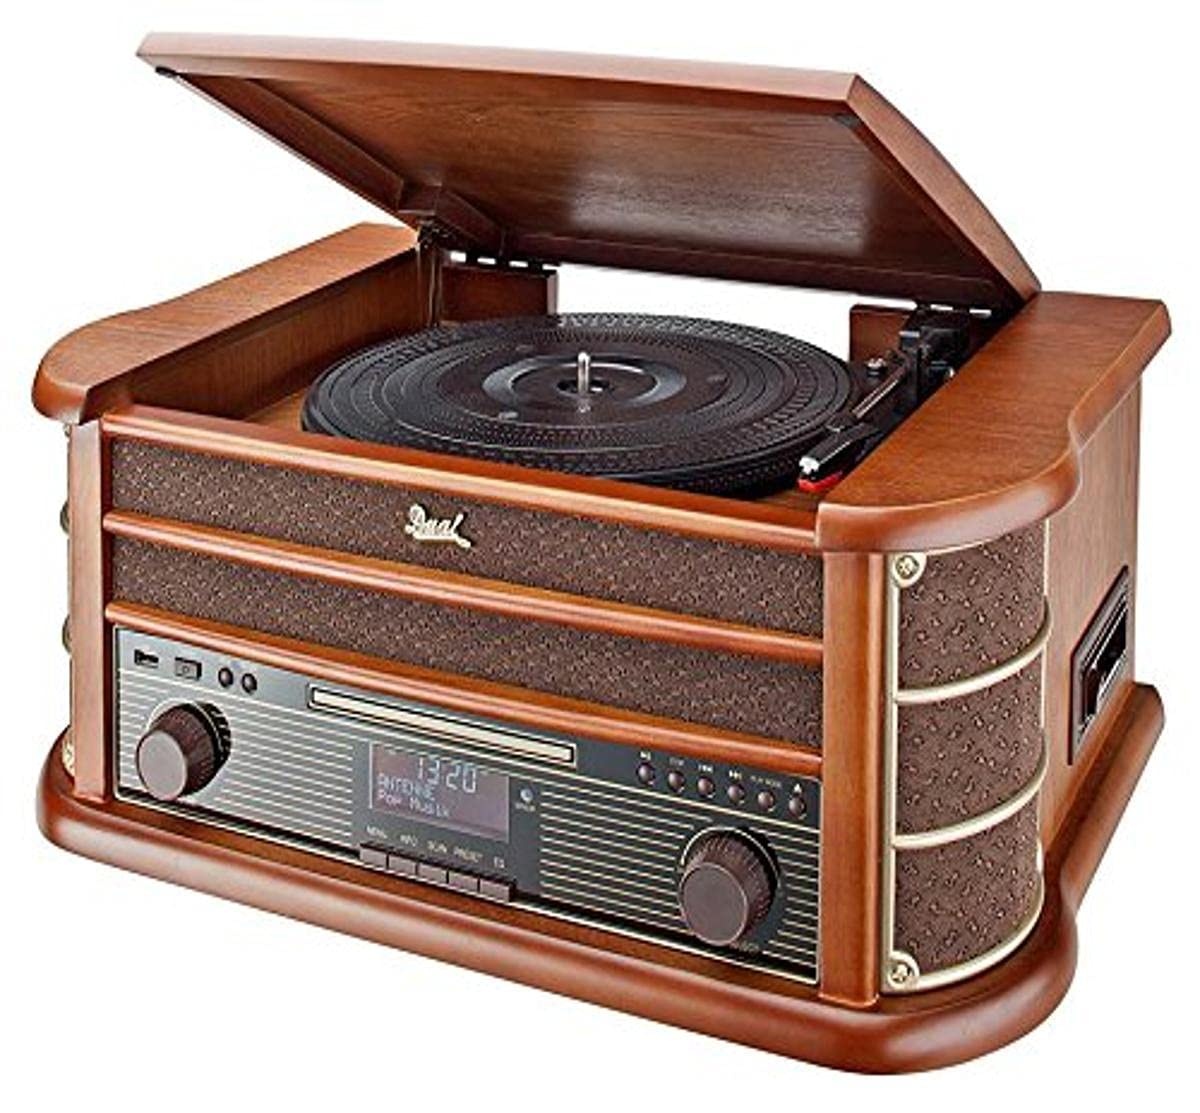 Dual NR 50 DAB Stereo-Nostalgie-Komplettanlage mit Plattenspieler (UKW/DAB(+) Radio, CD (MP3), USB, Kassettenabspieler, AUX-In, Direct-Encoding-Funktion, Fernbedienung) Braun